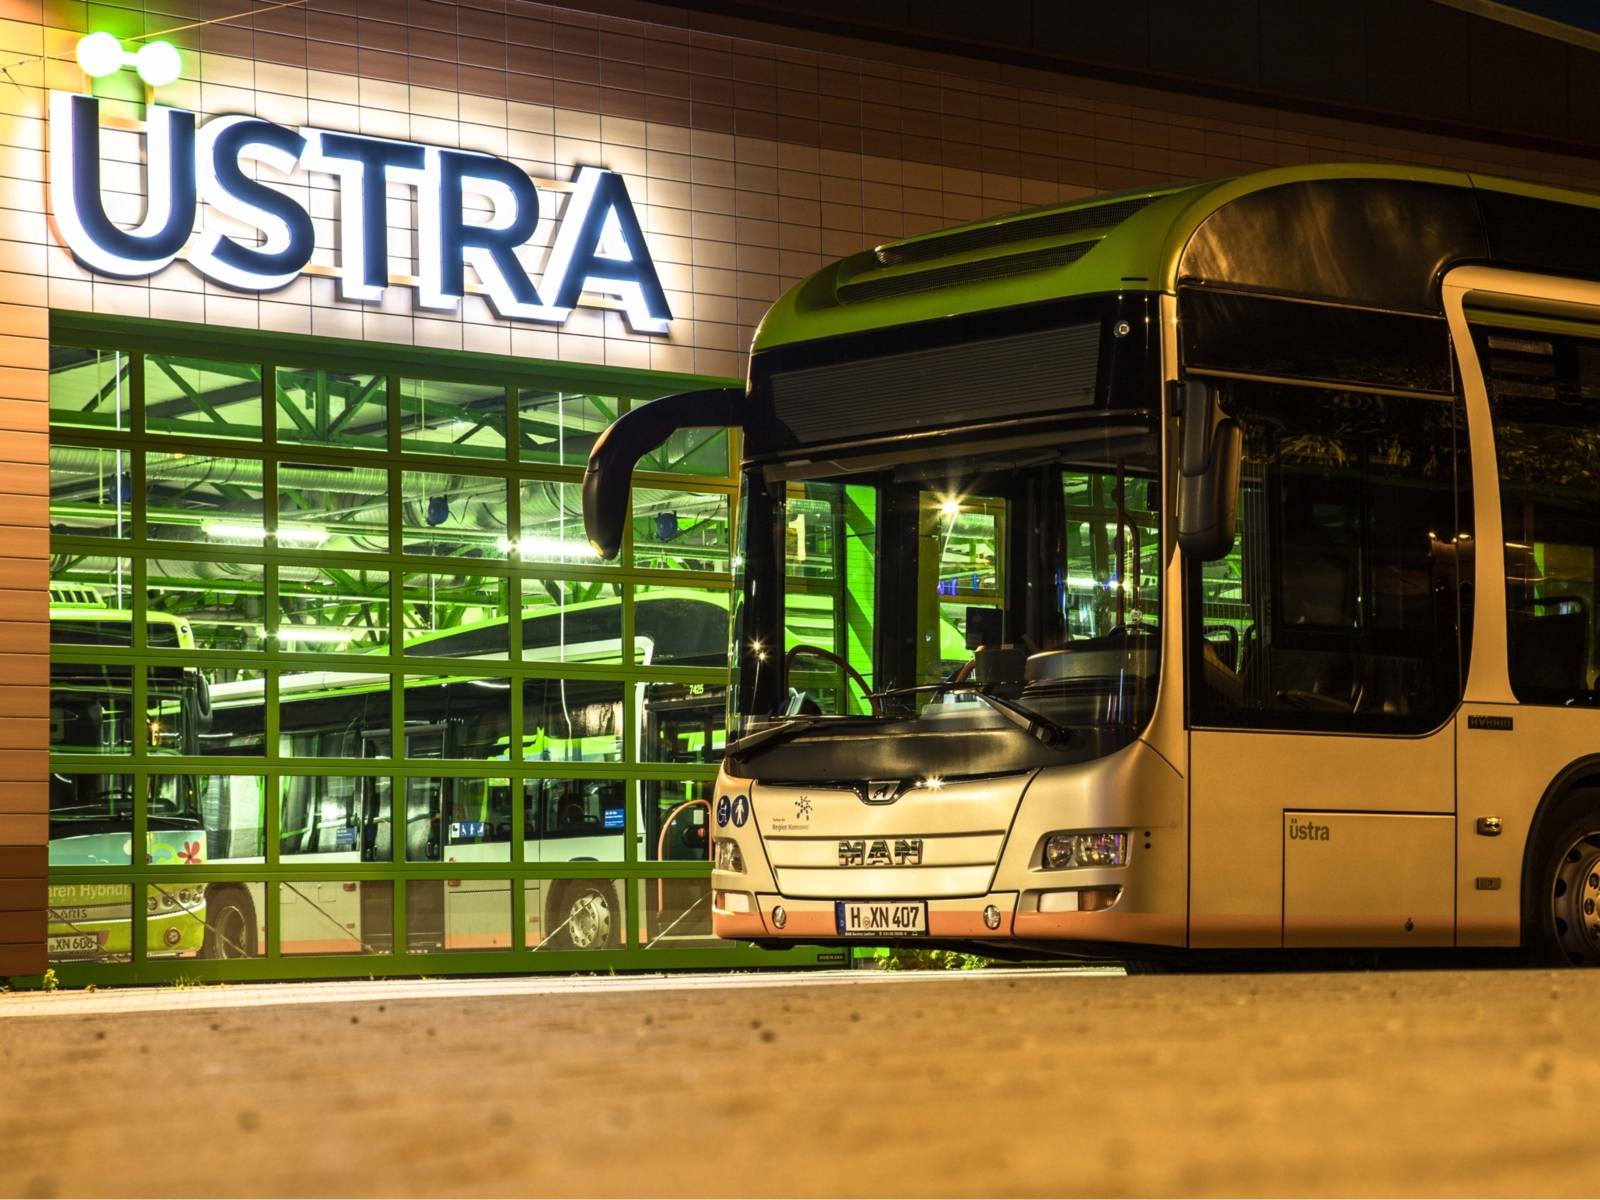 Ein MAN Bus bei Nacht auf dem Betriebshof Vahrenwald vor Bushalle mit dem beleuchteten ÜSTRA-Logo.